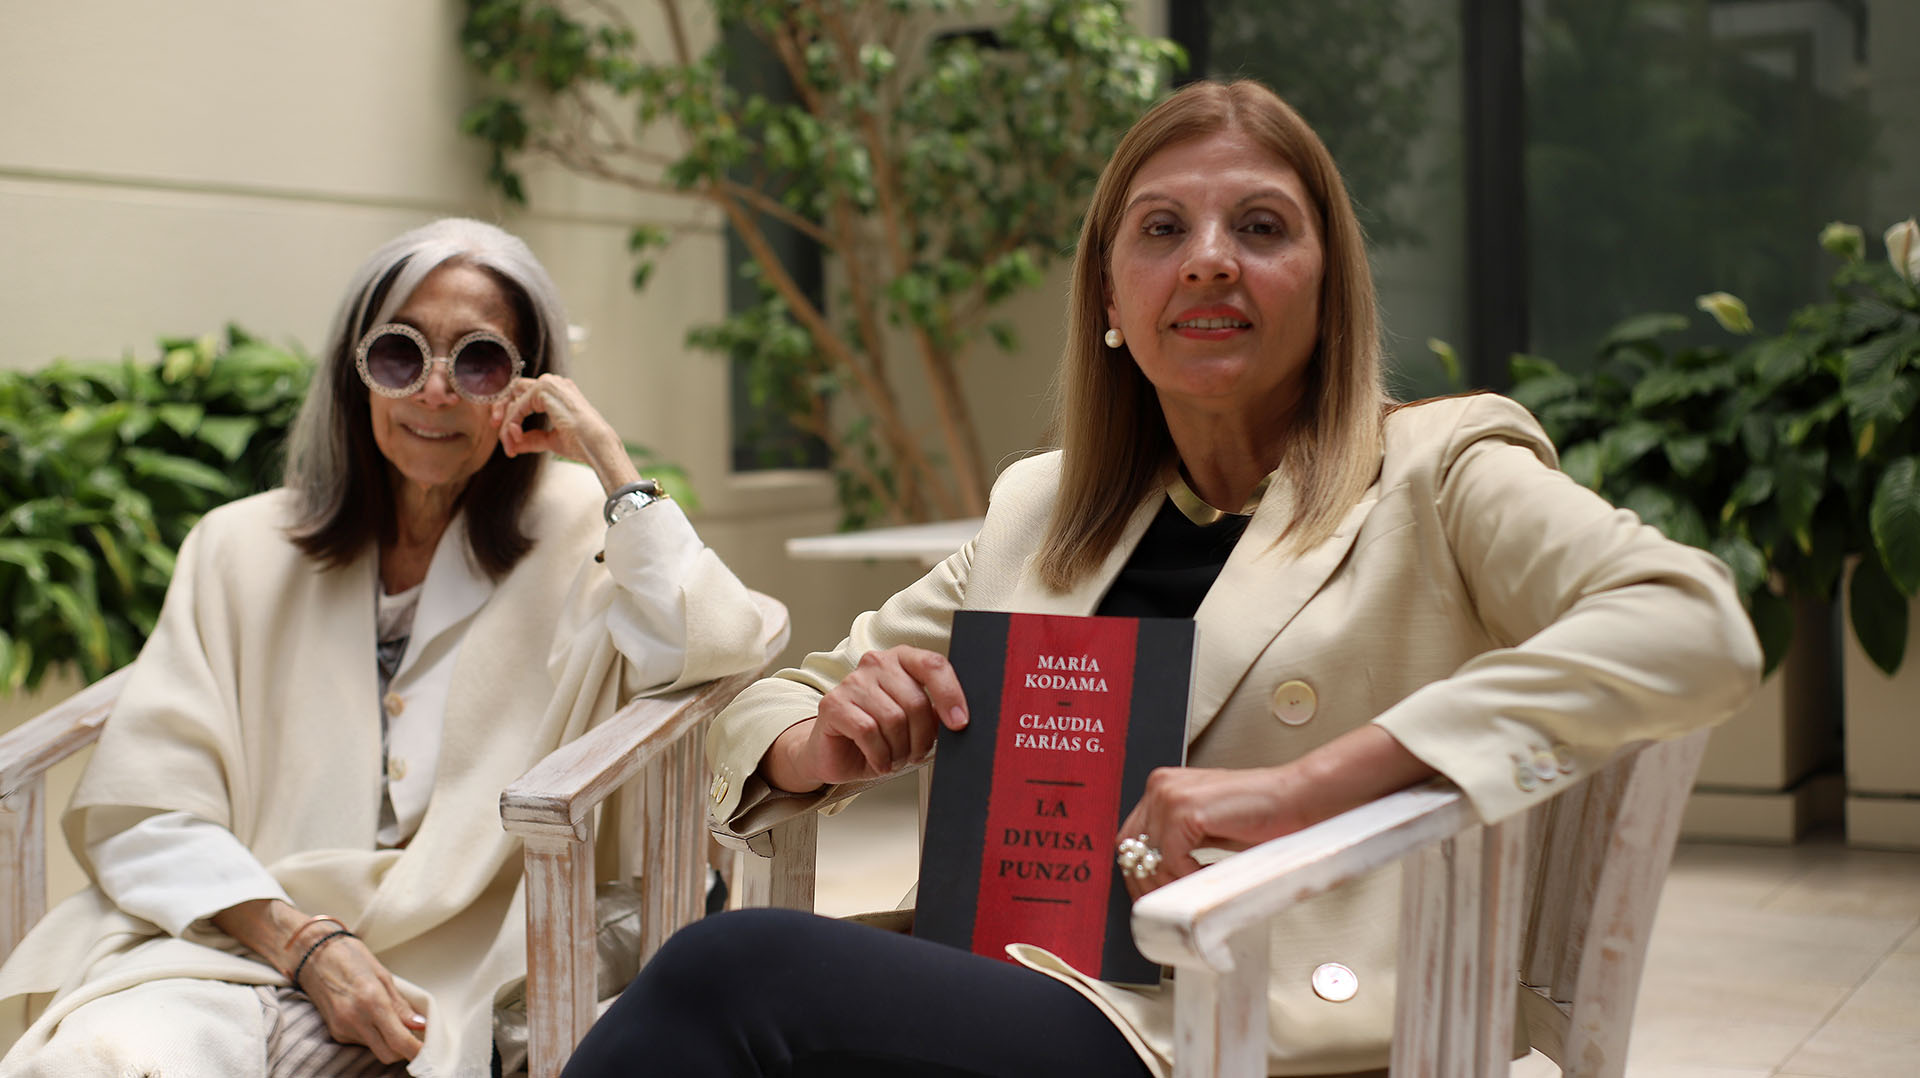 María Kodama junto a Claudia Farías Gómez en la presentación de su libro en común.